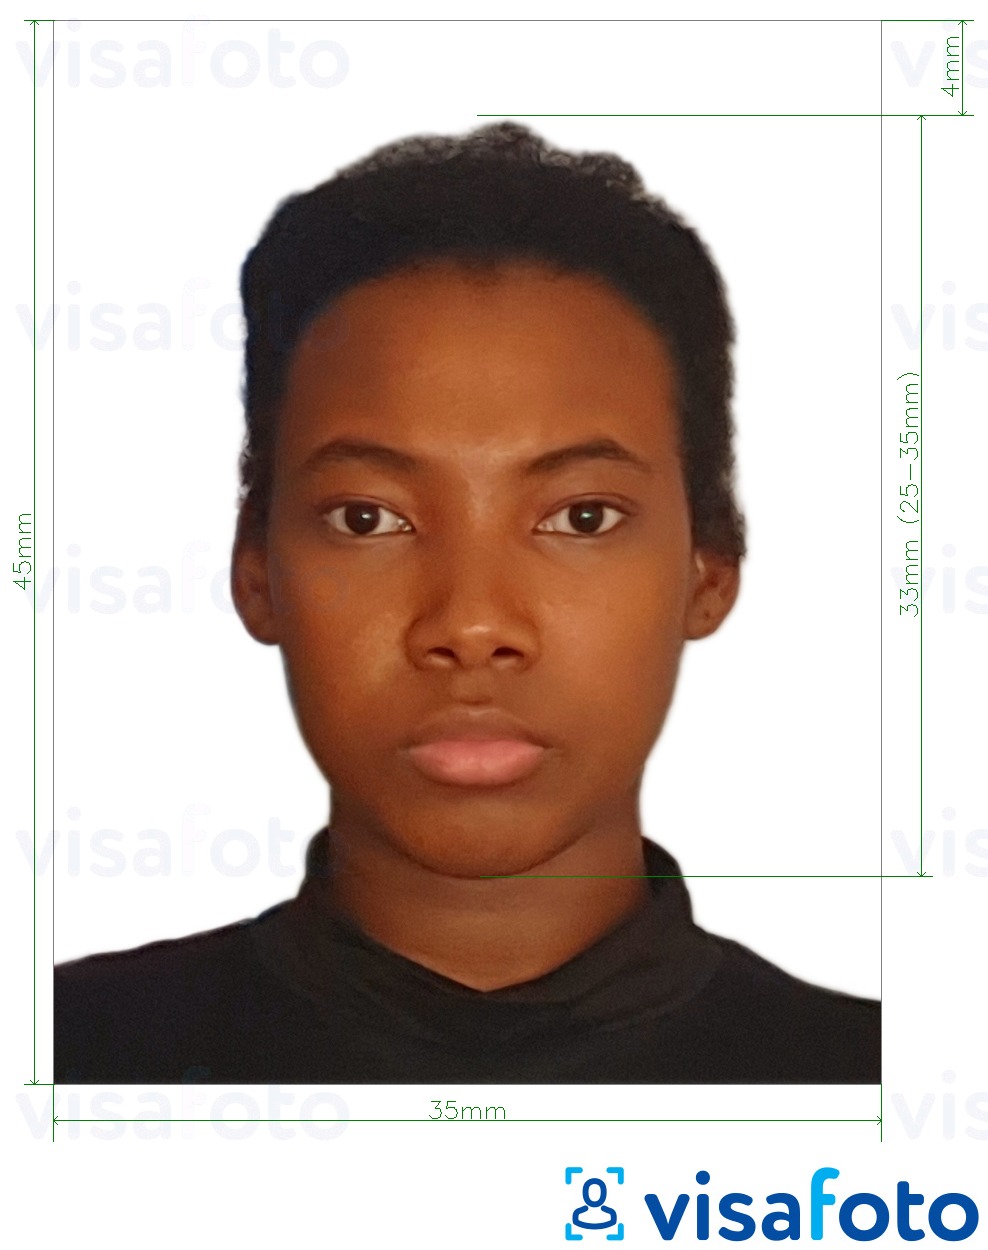 Voorbeeld van foto voor Jamaica paspoort 35x45 mm (3.5x4.5 cm) met exacte maatspecificatie